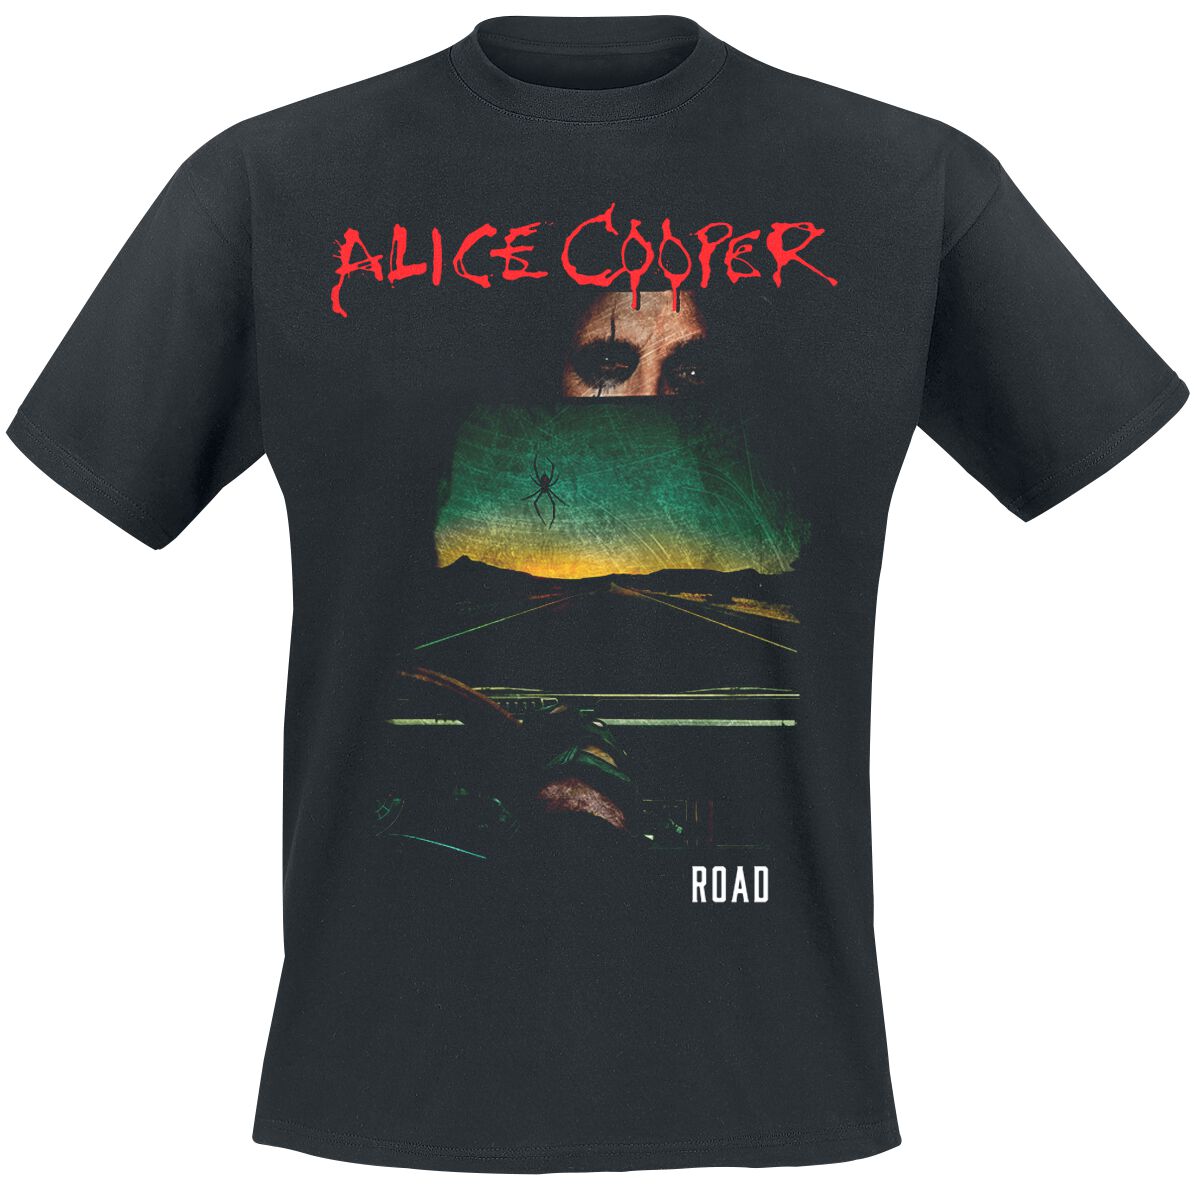 Alice Cooper T-Shirt - Road Cover Tracklist - S bis XXL - für Männer - Größe L - schwarz  - Lizenziertes Merchandise!